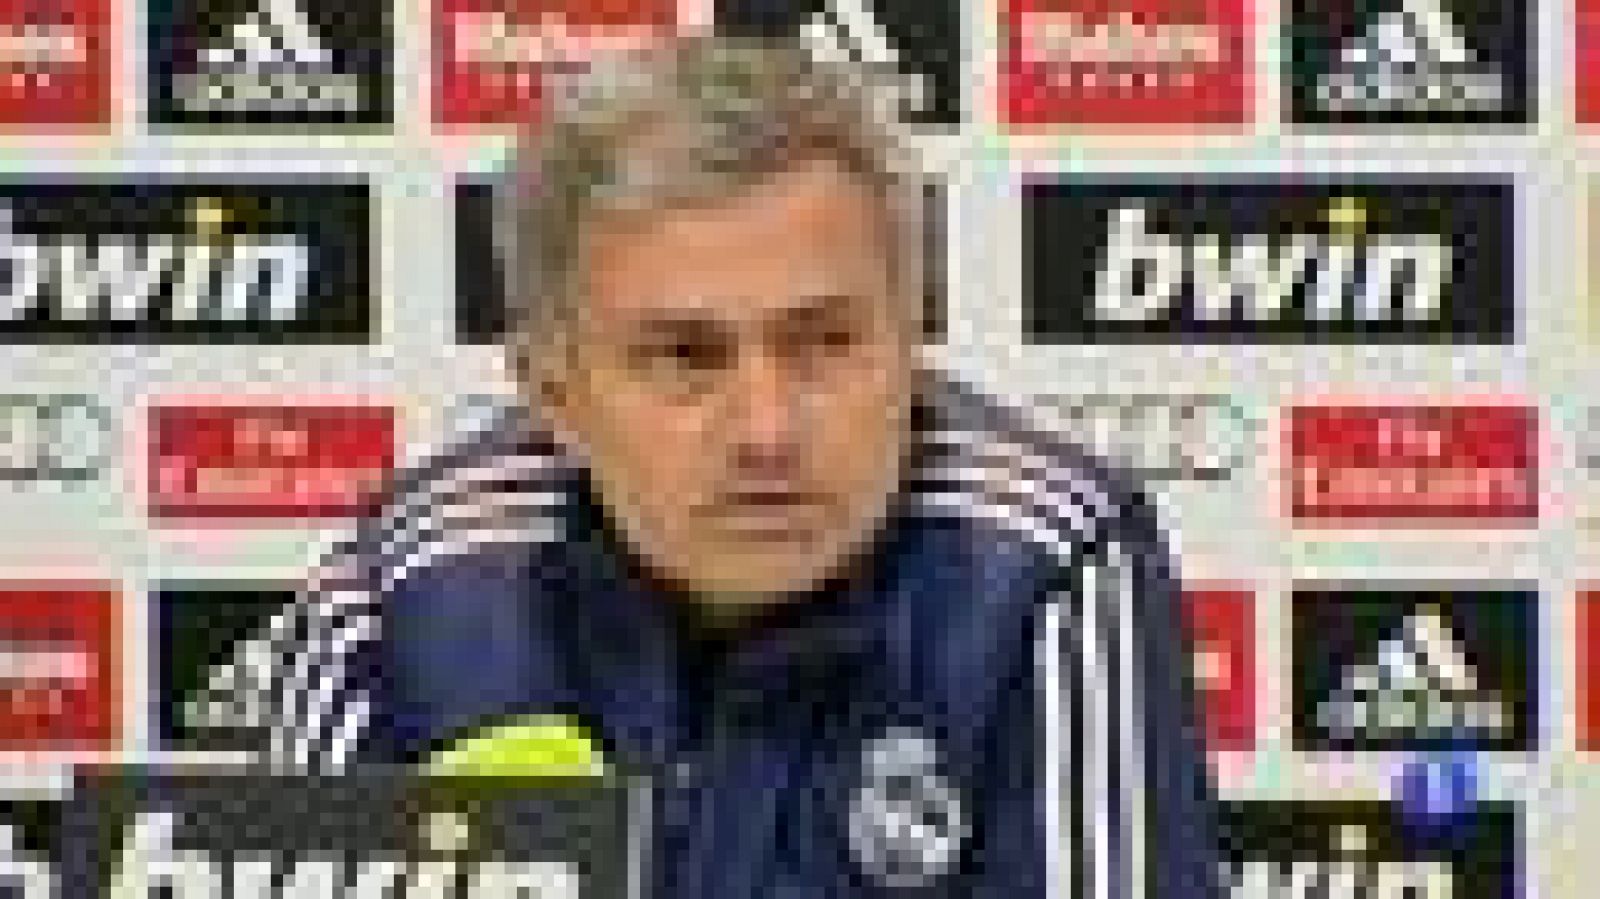 El entrenador del Real Madrid, Jose Mourinho, ha asegurado que su relación con el presidente del equipo blanco, Florentino Pérez, es "muy buena" y que no tiene nigún problema con la directiva.